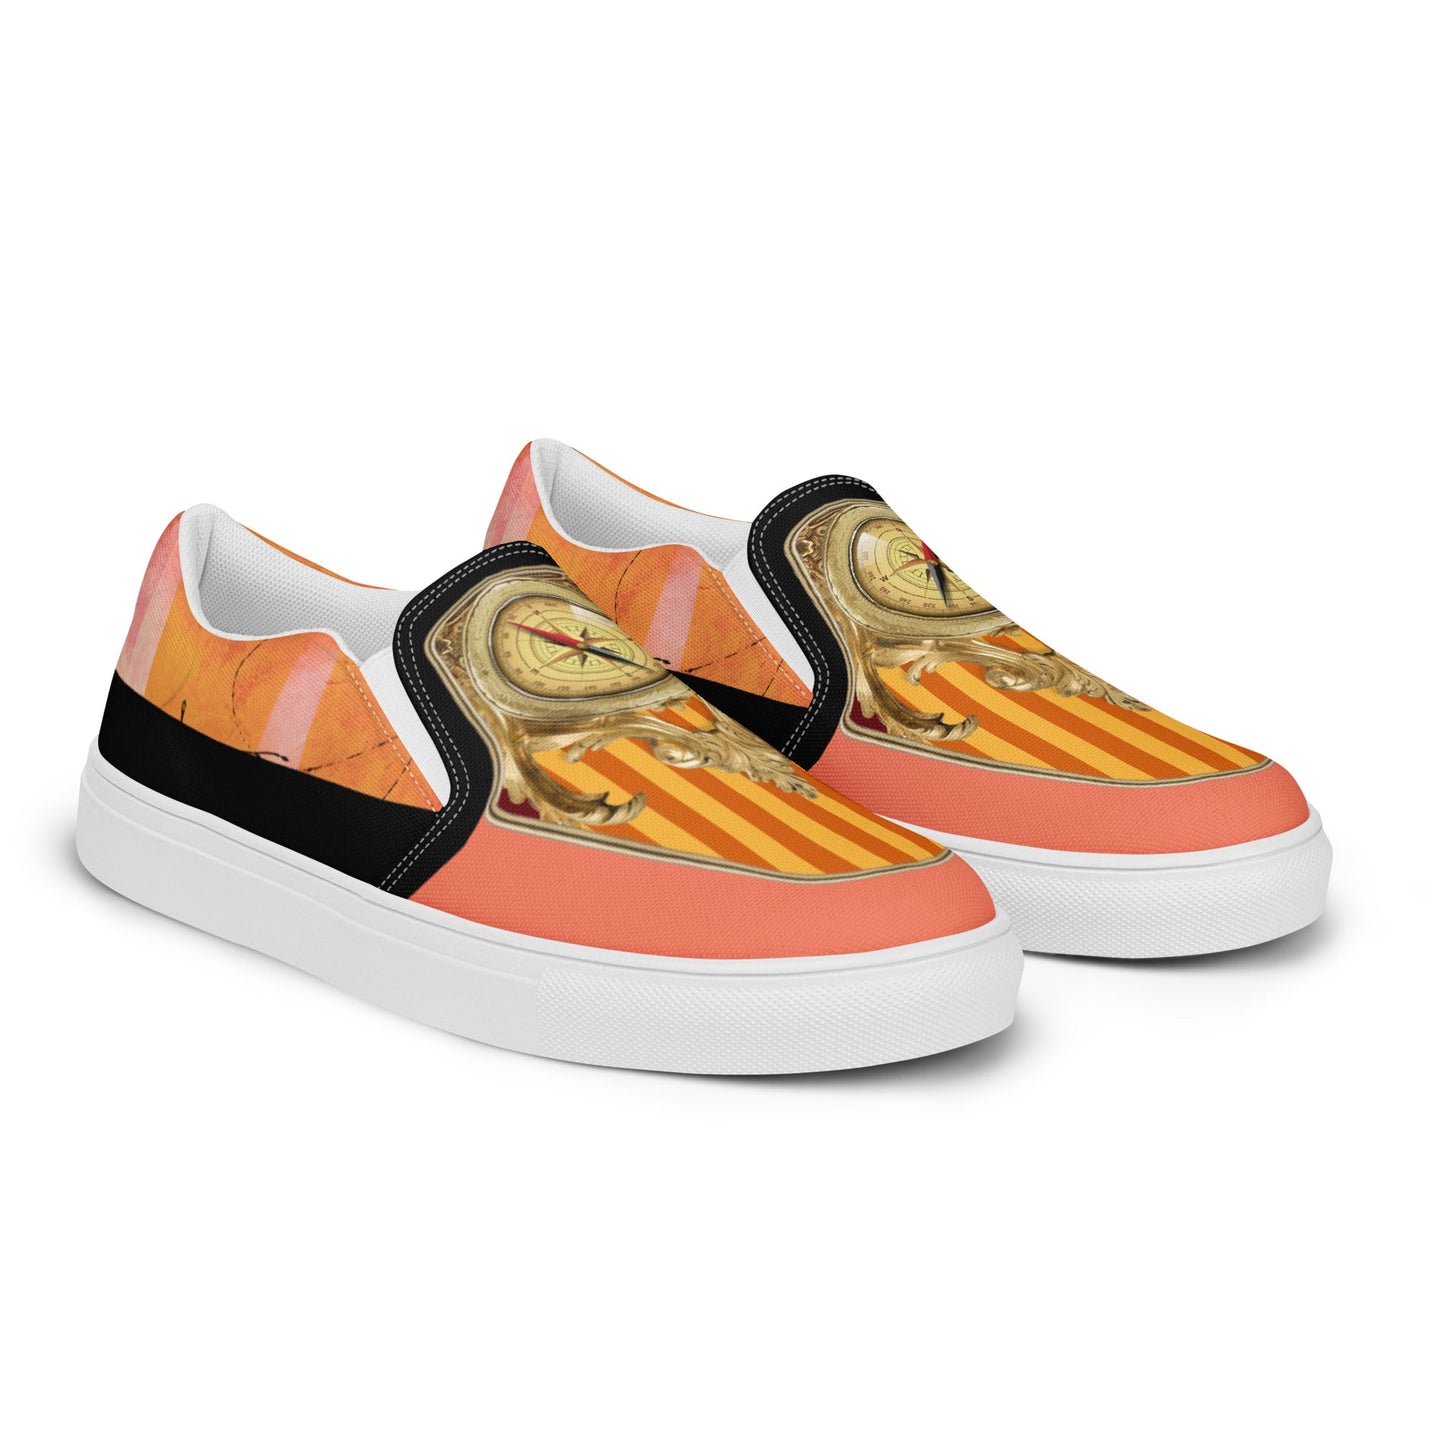 klasneakers Men’s slip-on canvas shoes - Gold Compass